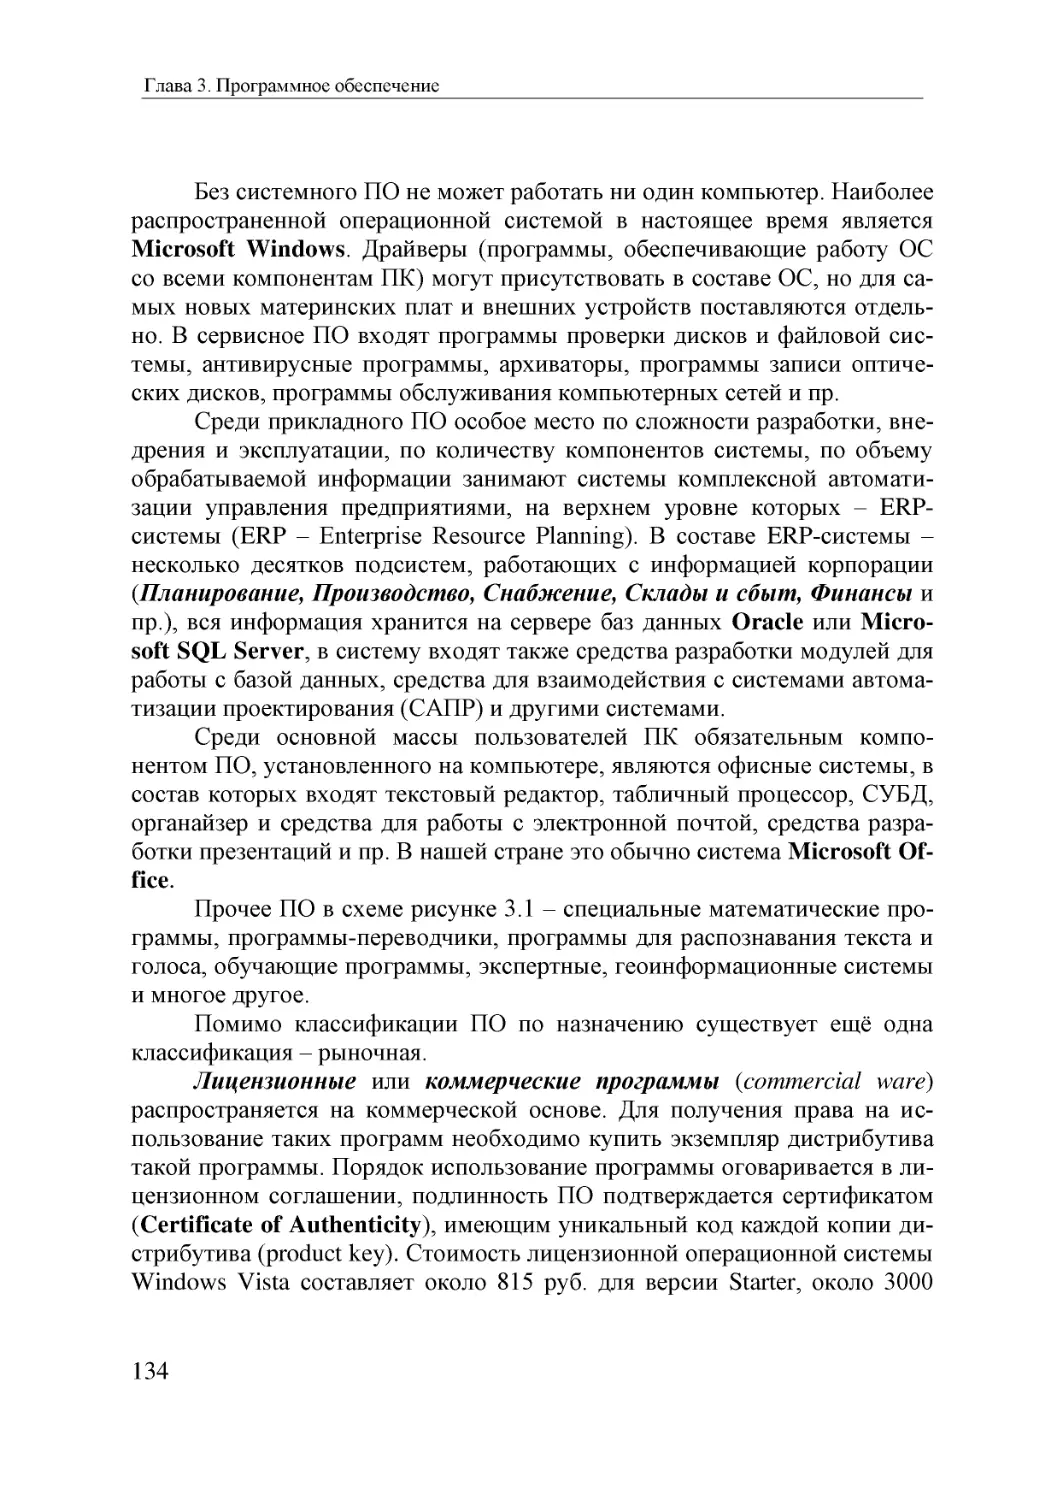 Informatika_Uchebnik_dlya_vuzov_2010 134